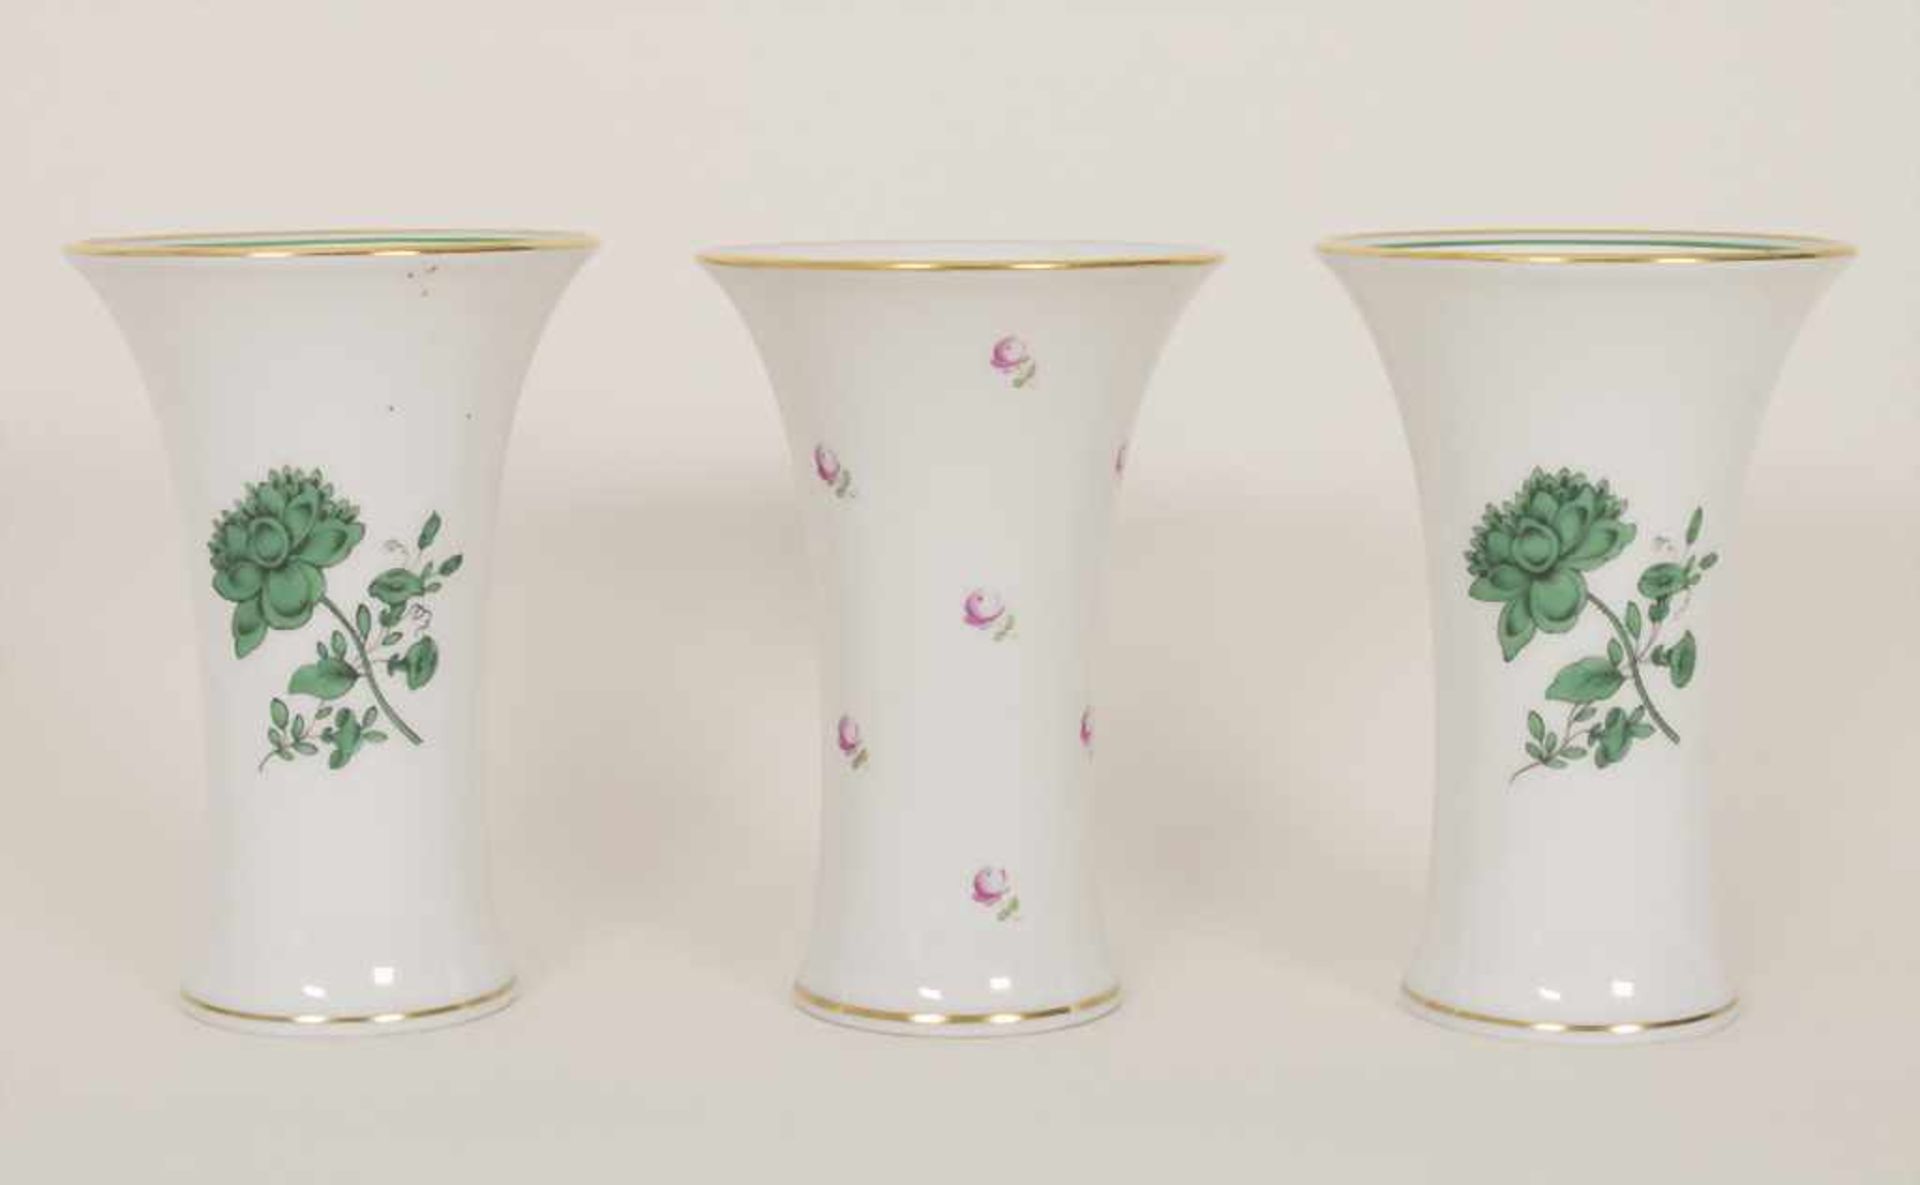 3 Vasen / 3 vases, Augarten, Wien, Mitte 20. Jh.Material: Porzellan, polychrom bemalt und